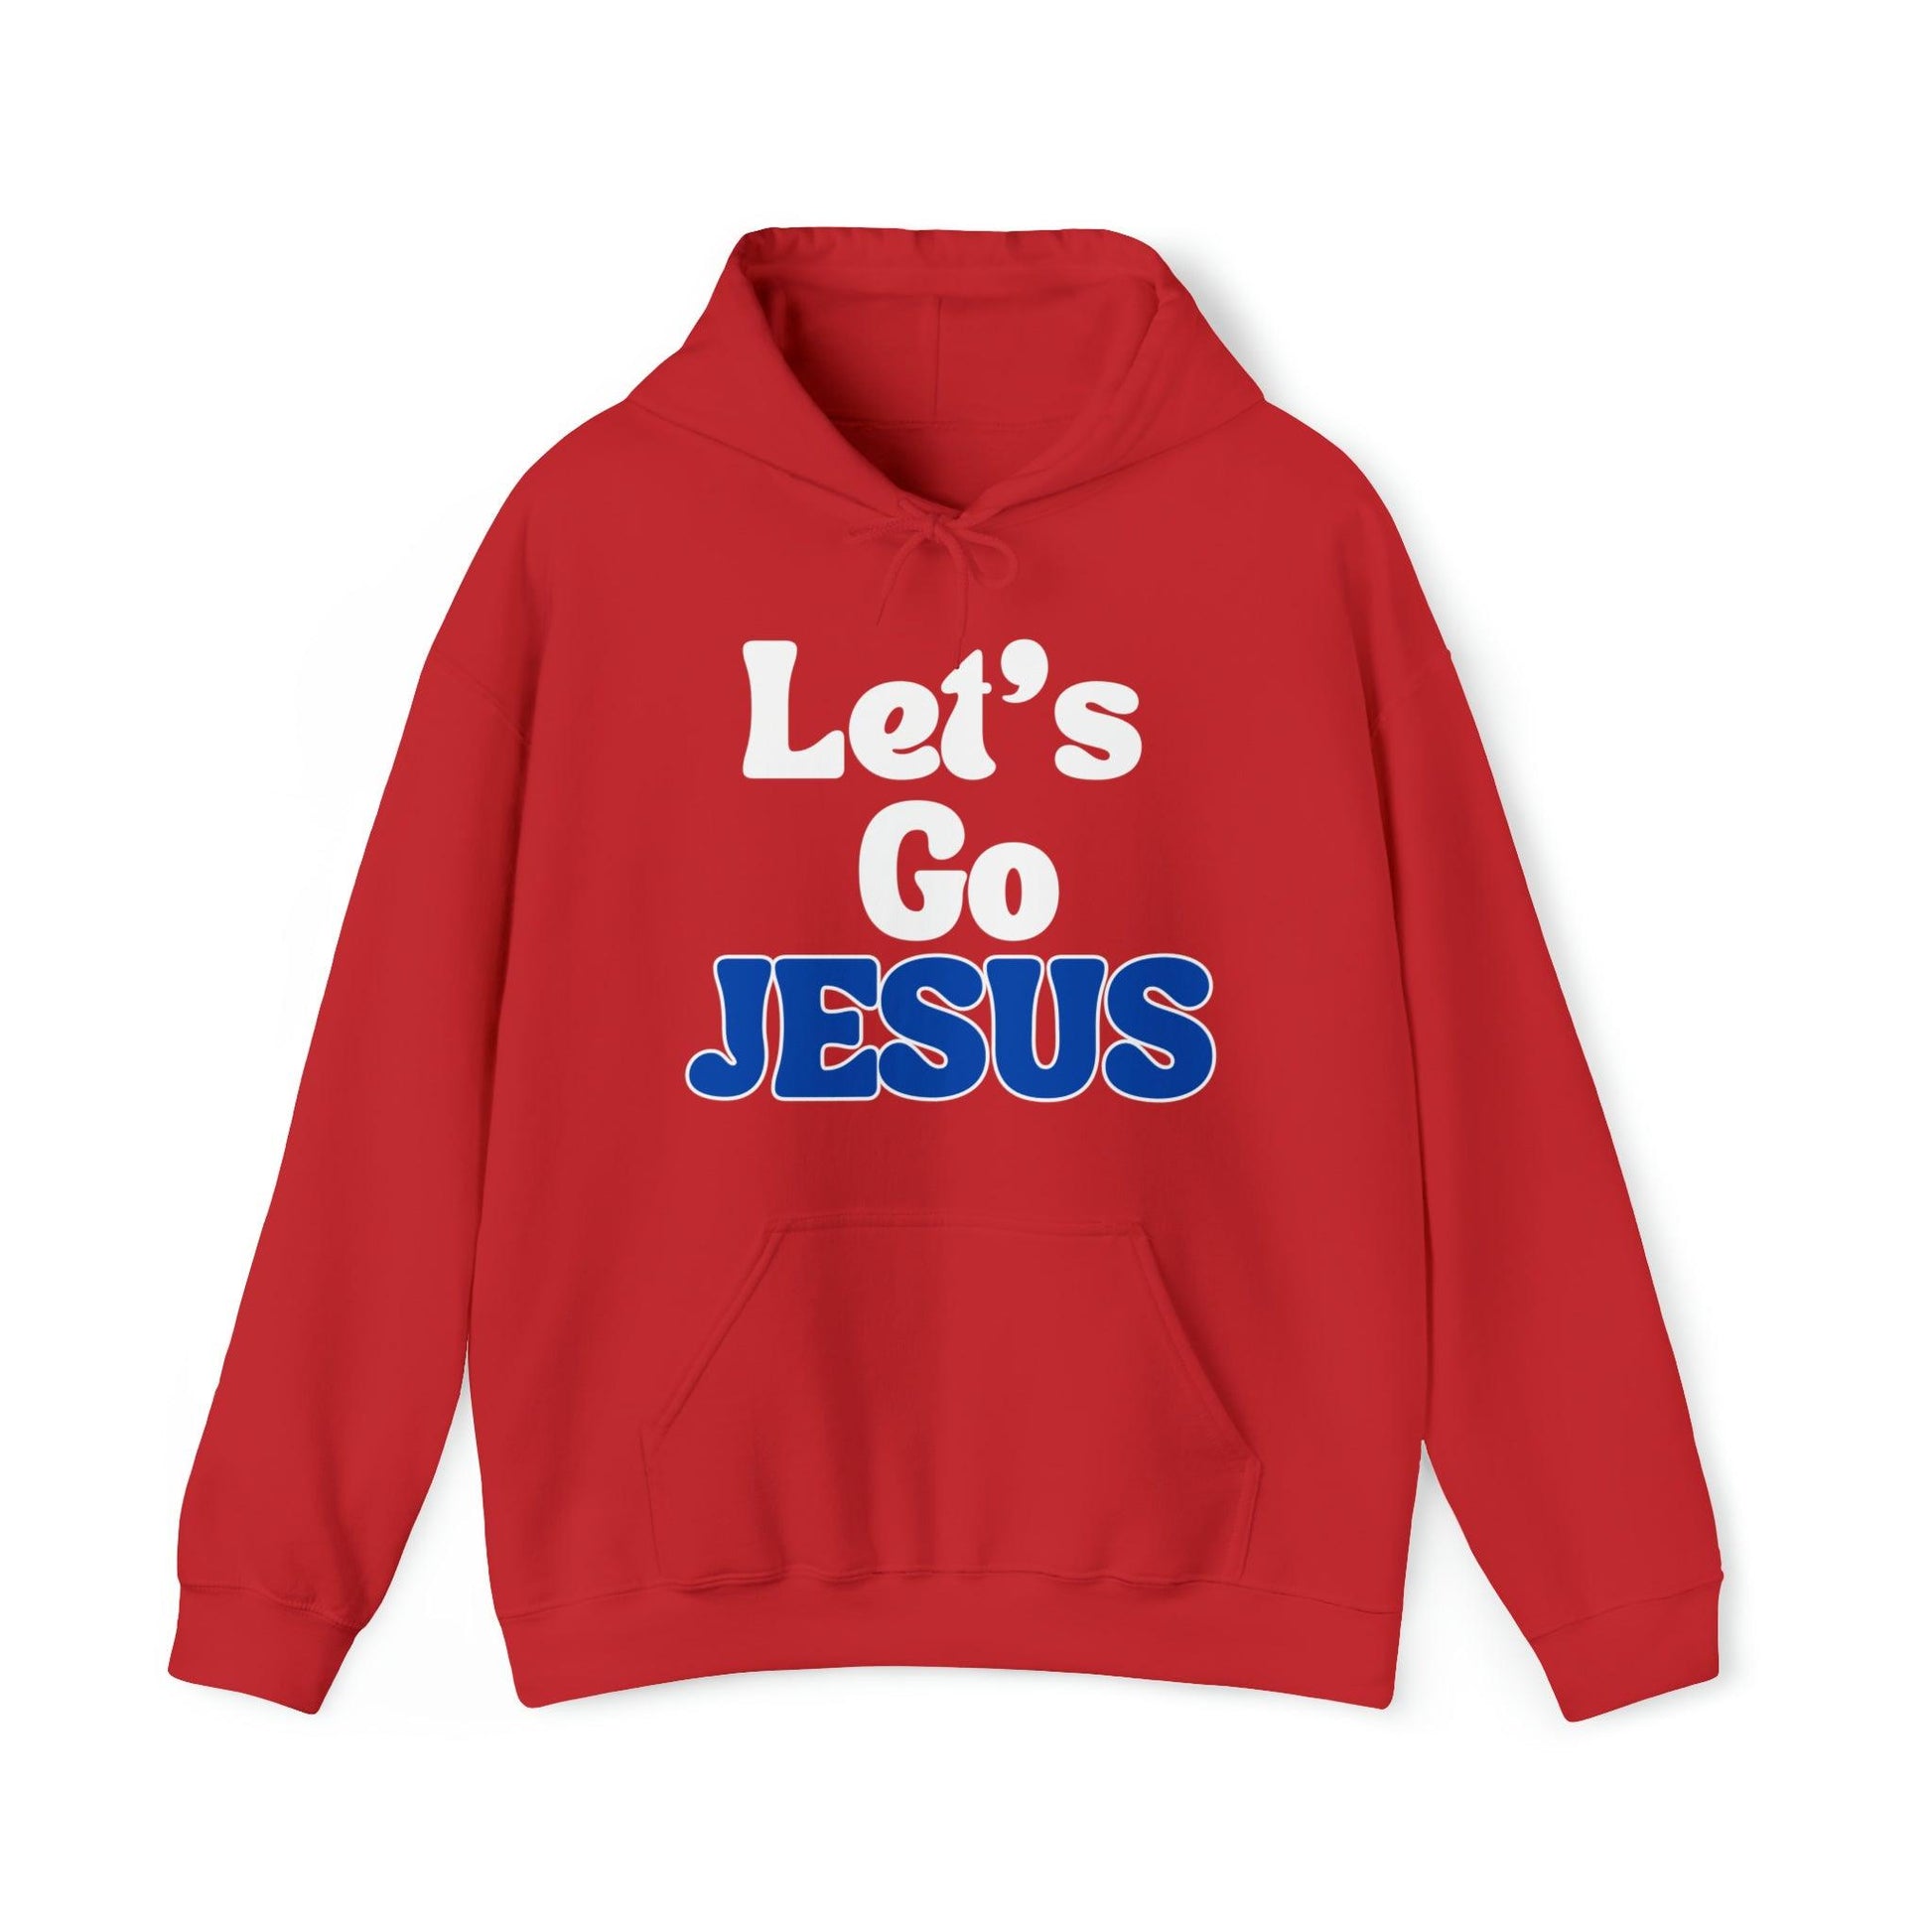 Funny Christian Shirt Let's Go Jesus Hooded Sweatshirt Christian Gift Trendy Christian Sweatshirt Religious Sweatshirt Jesus Hoodie Faith Shirt - Giftsmojo